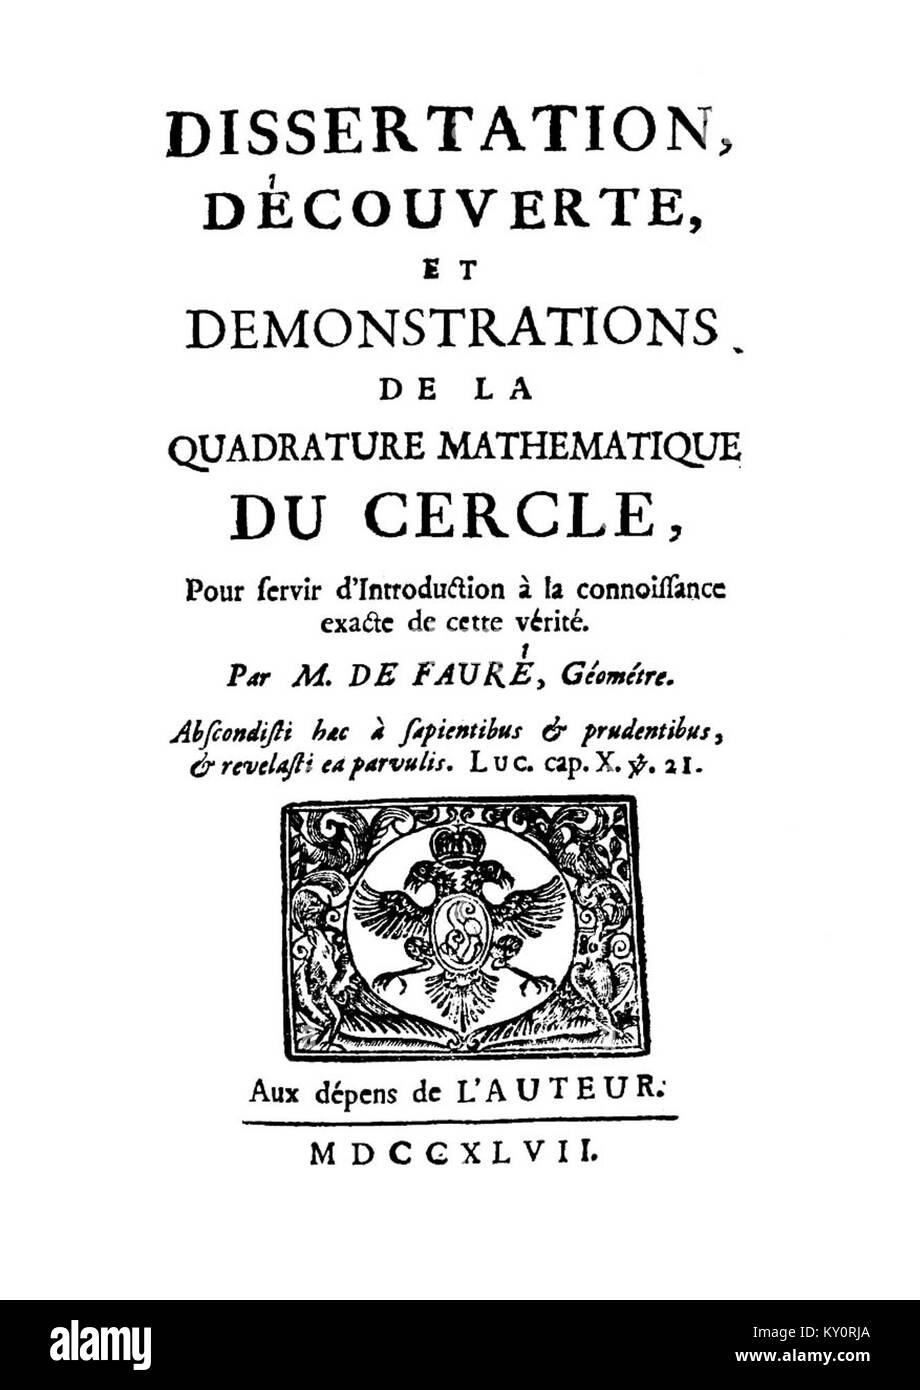 Faurè - Dissertation, découverte, et demonstrations de la quadrature mathematique du cercle, 1747 - 1515965 Stock Photo